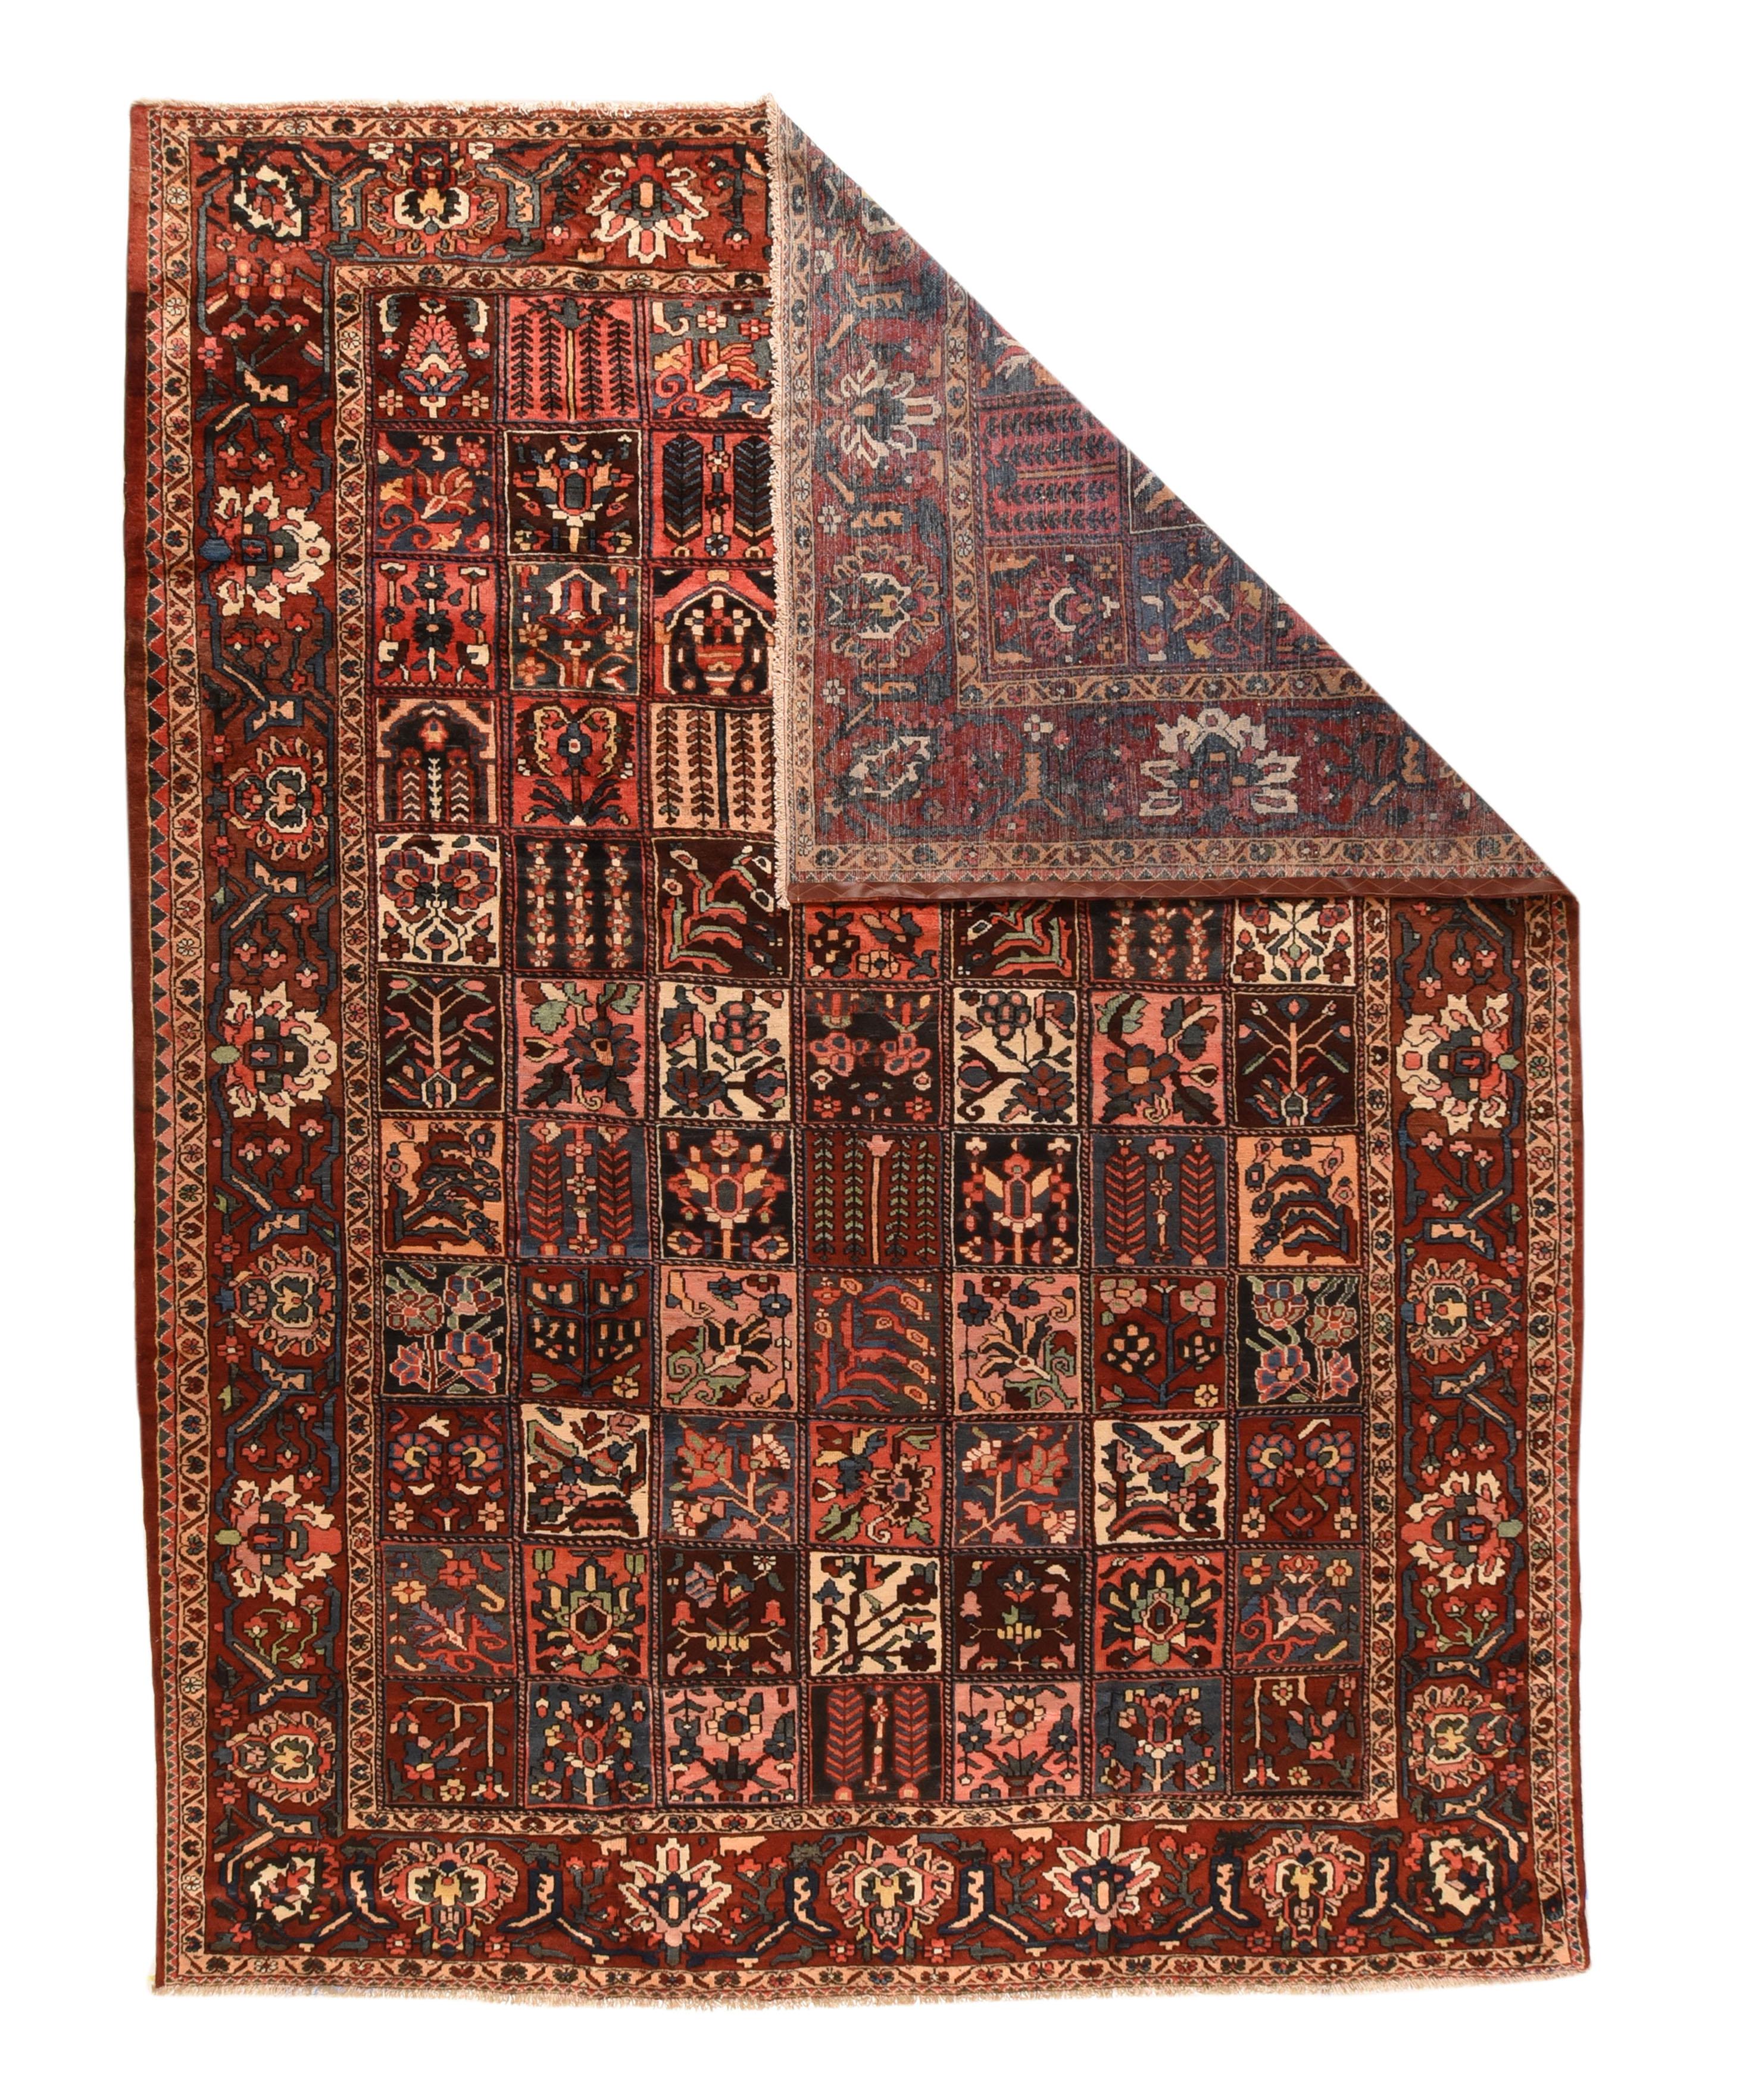 Ce tapis de village de la région de Chahar Mahal, en Perse centrale, présente un motif de sept panneaux de fenêtre de 